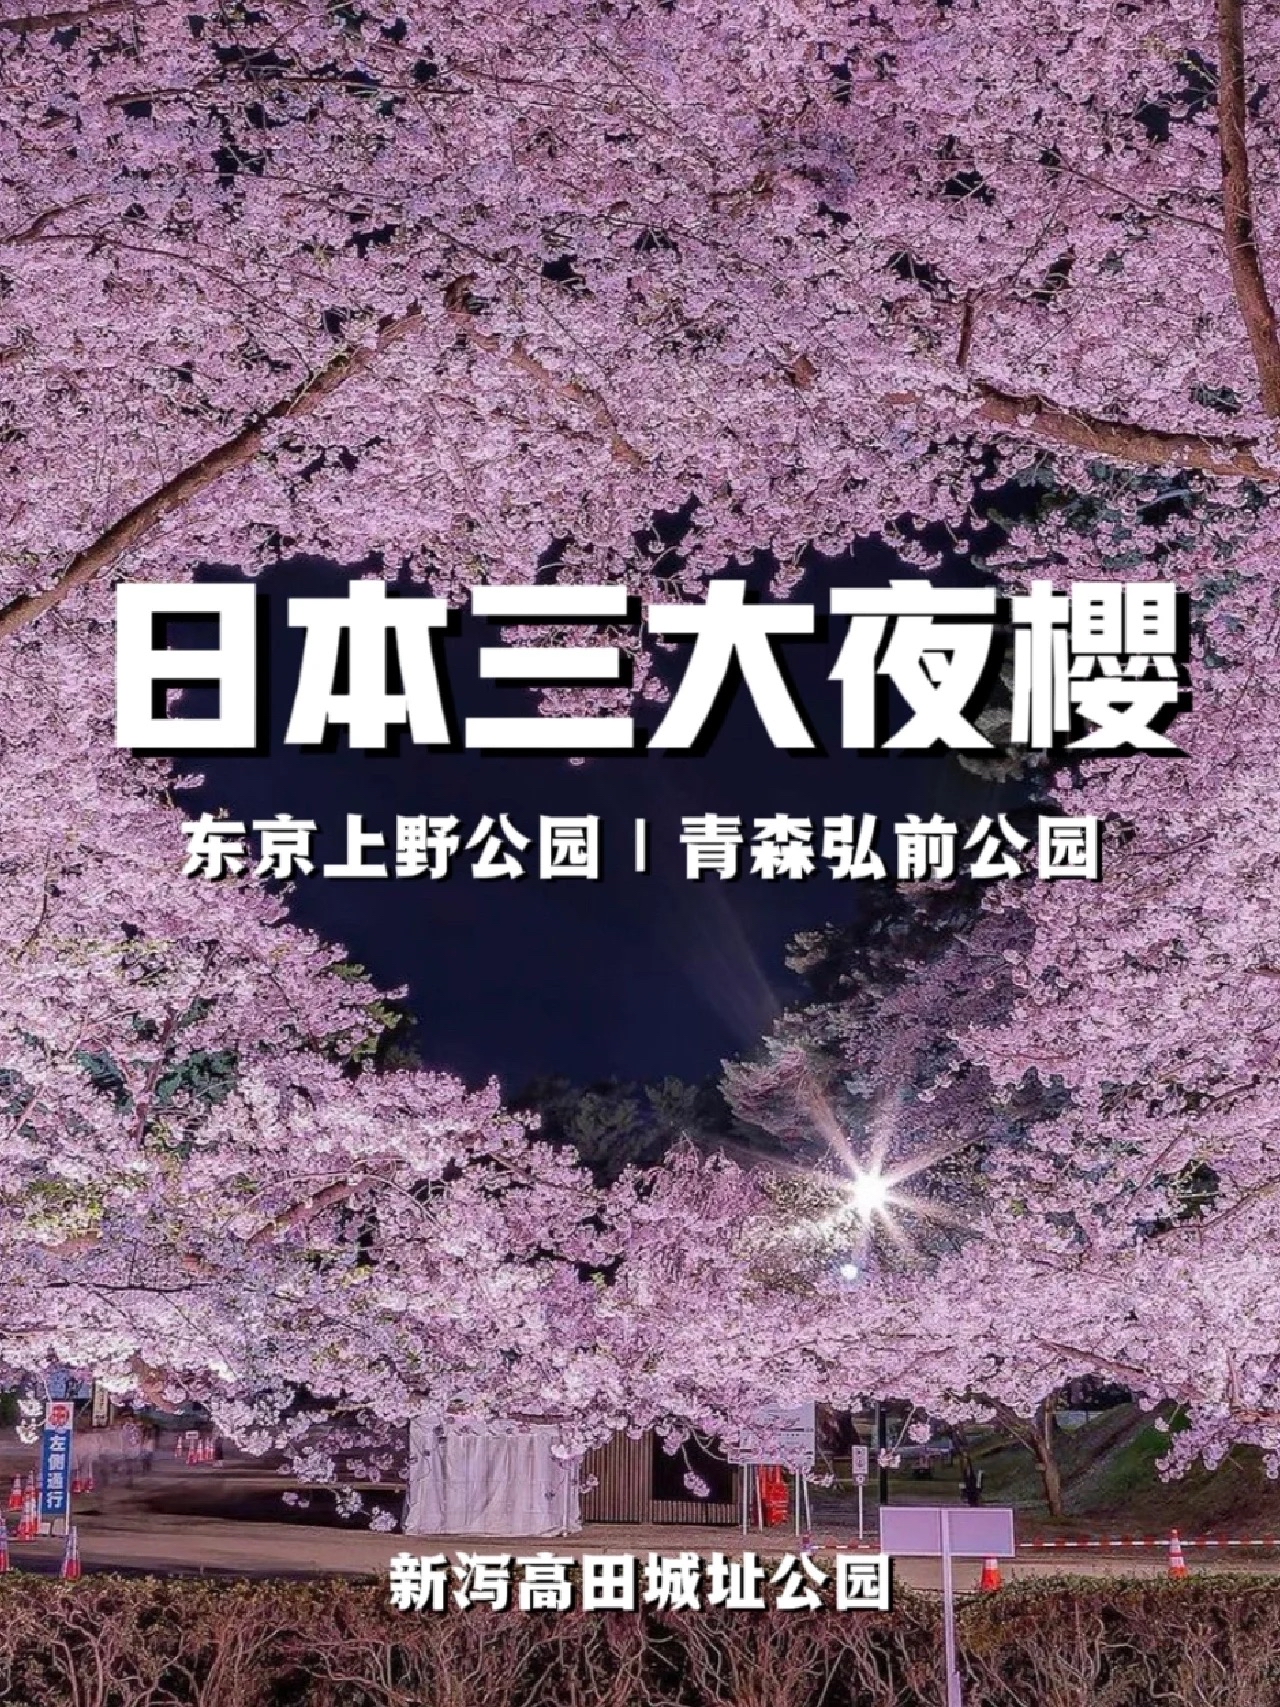 日本三大夜樱|灯光下的粉红绝景#令人难忘的景点 日本赏樱季节来临!日本不仅白天能赏樱，夜晚也能欣赏到